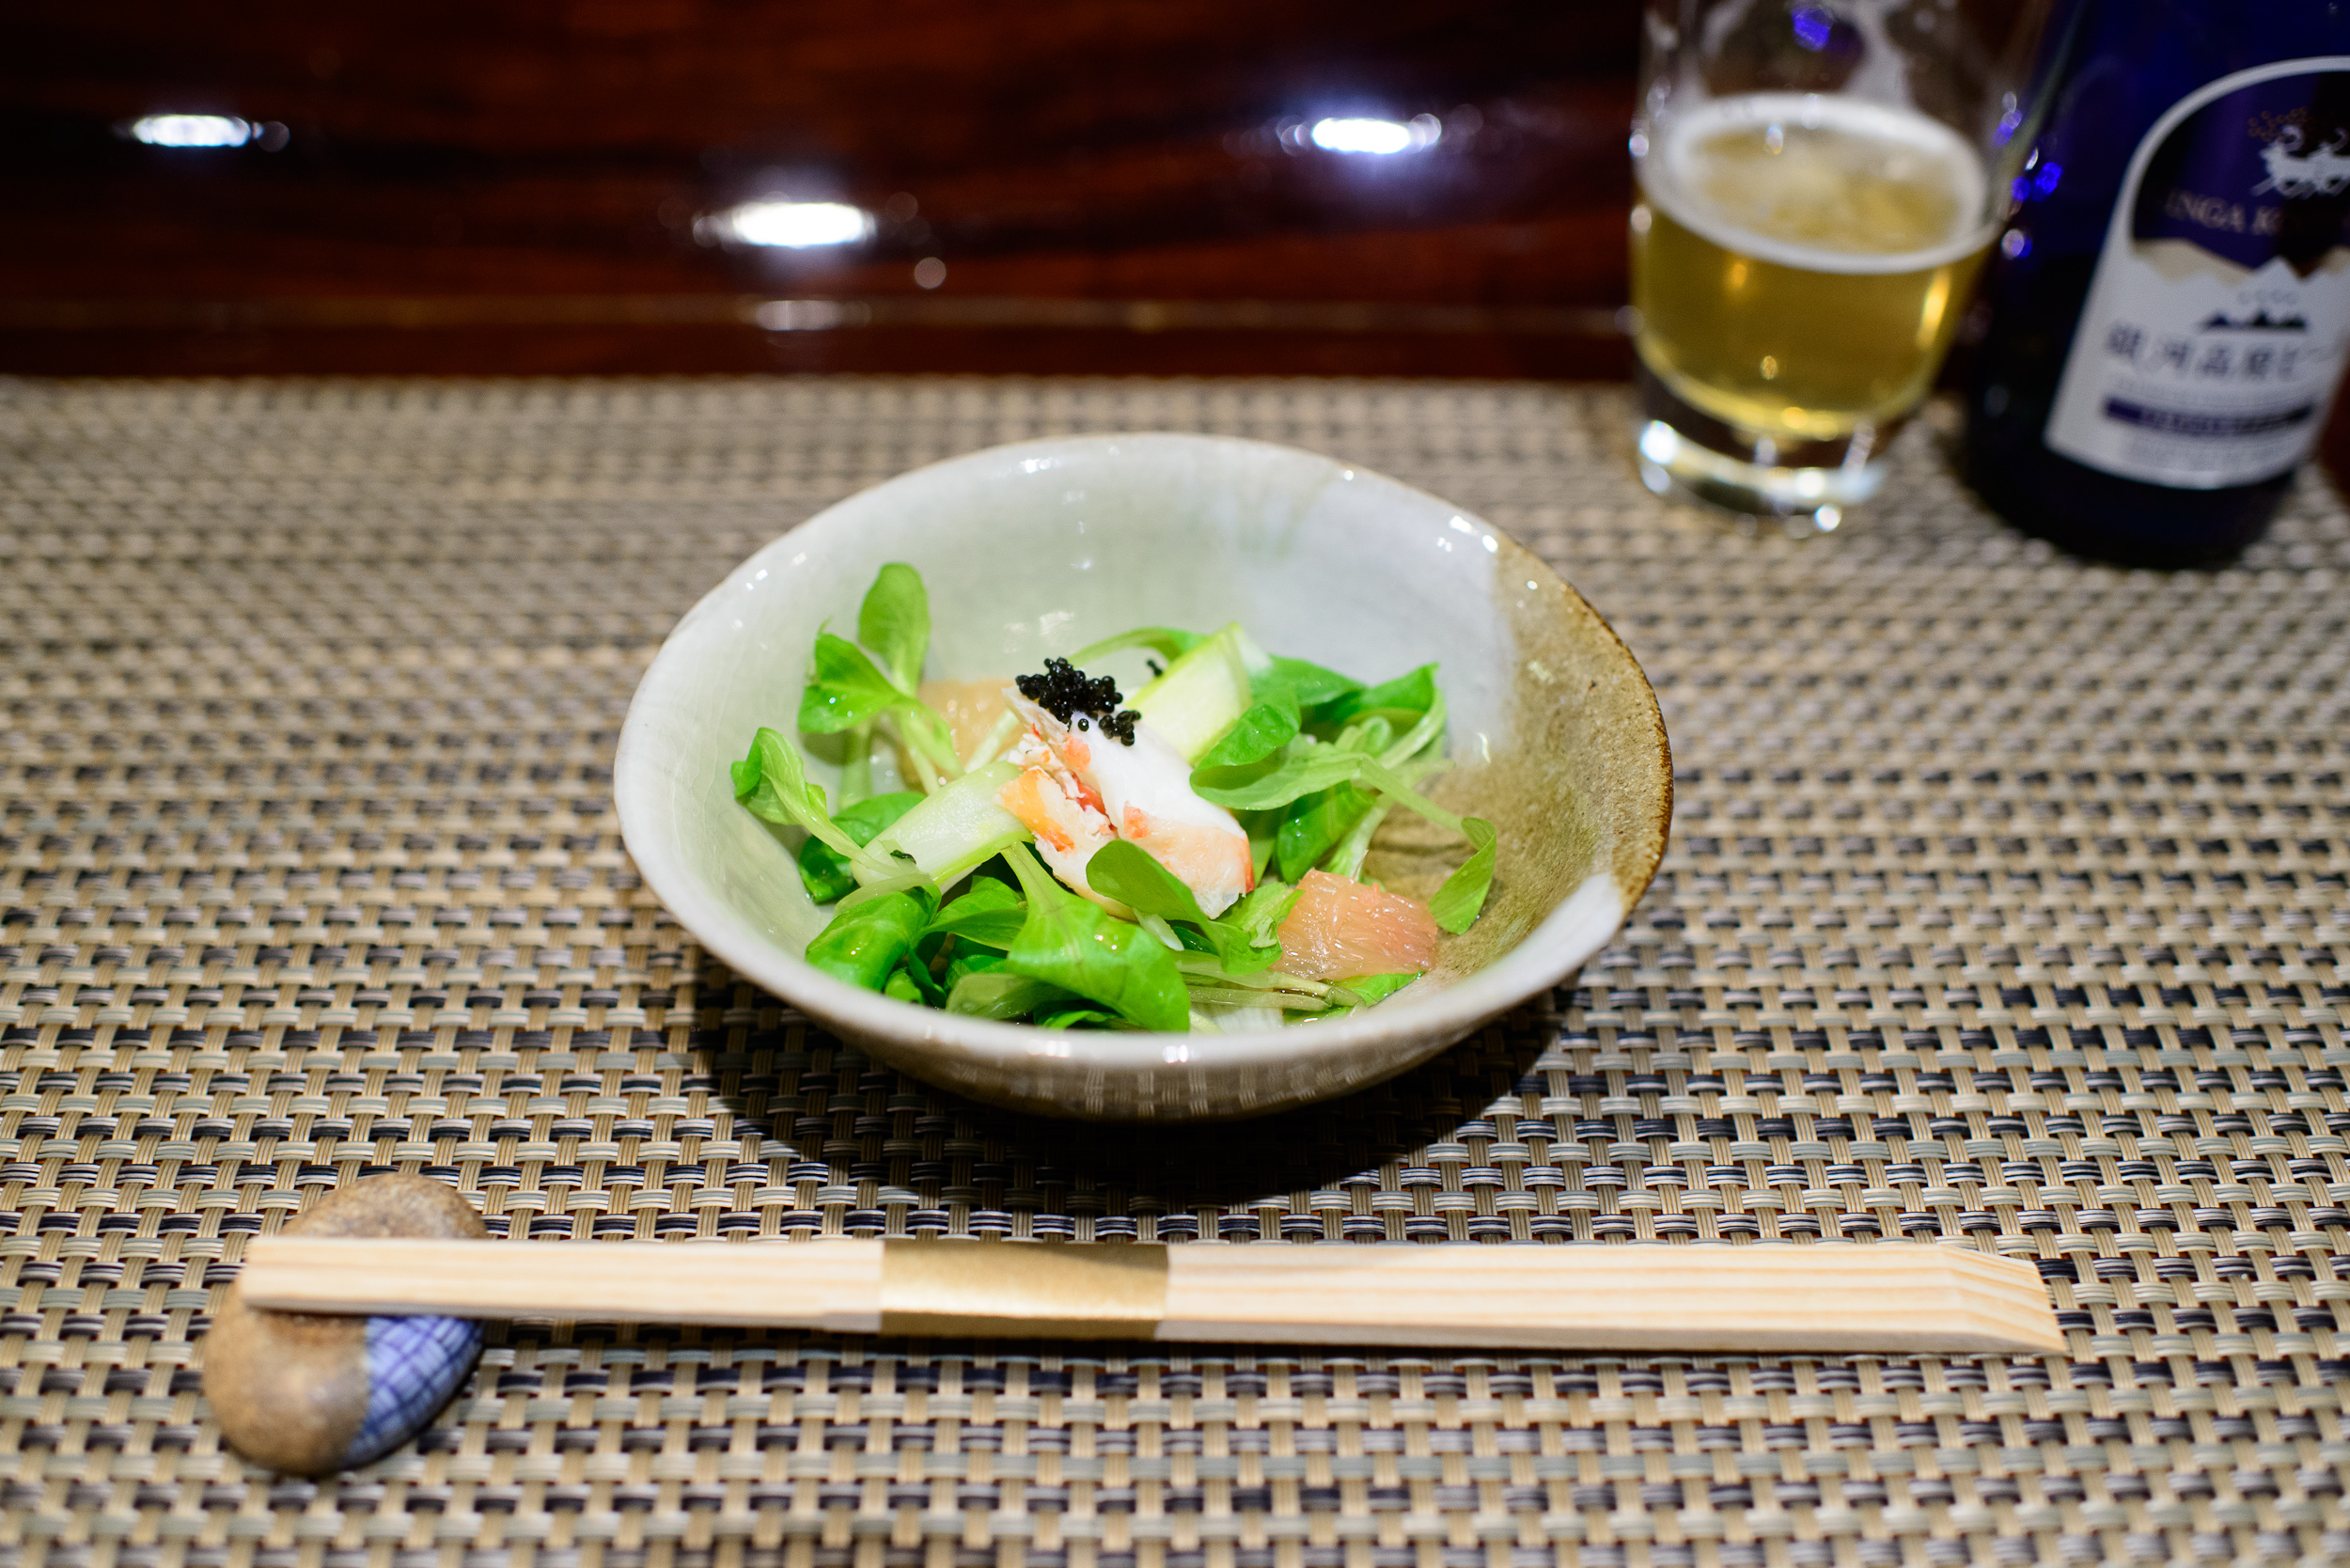 2nd Course: "Sakizuke" - Alaskan king crab salad